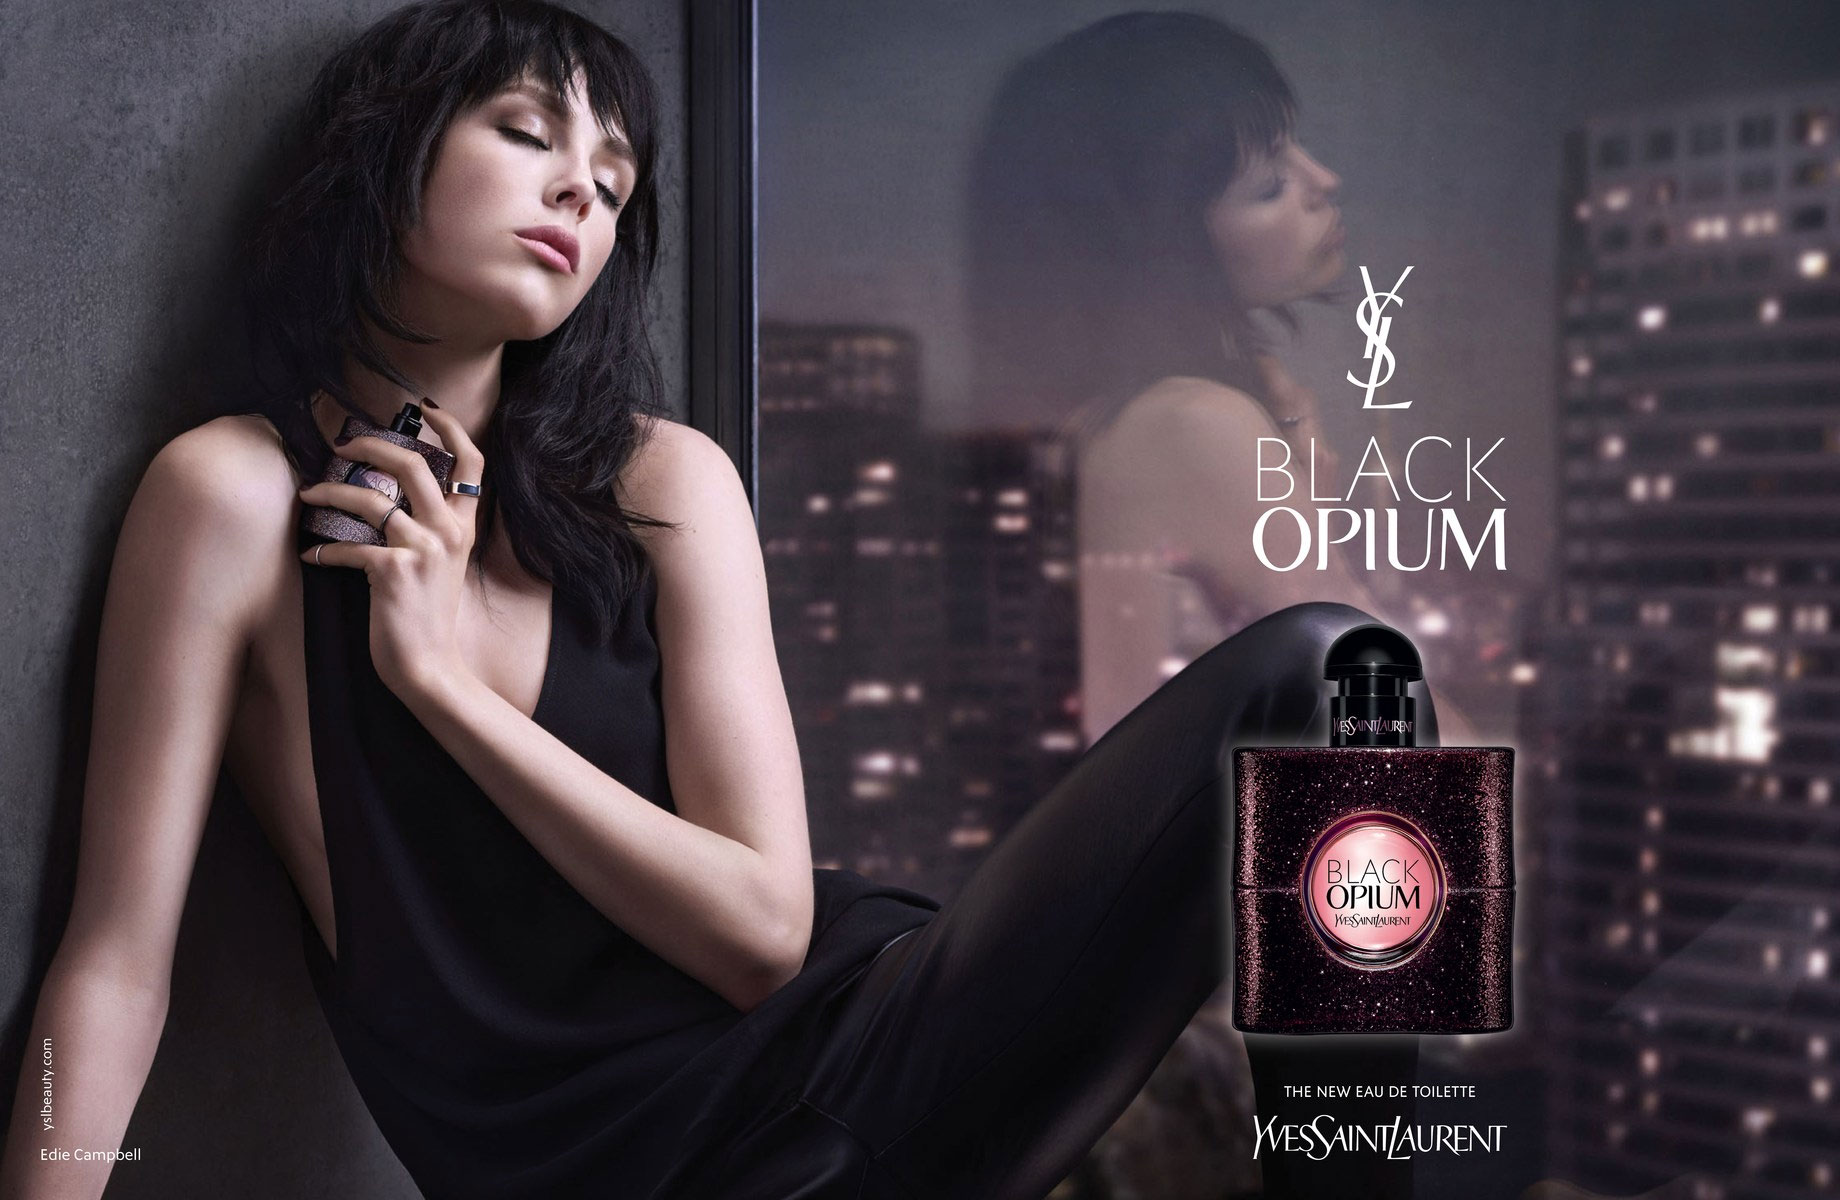 Yves Saint Laurent Black Opium Eau de Toilette Fragrance Ad